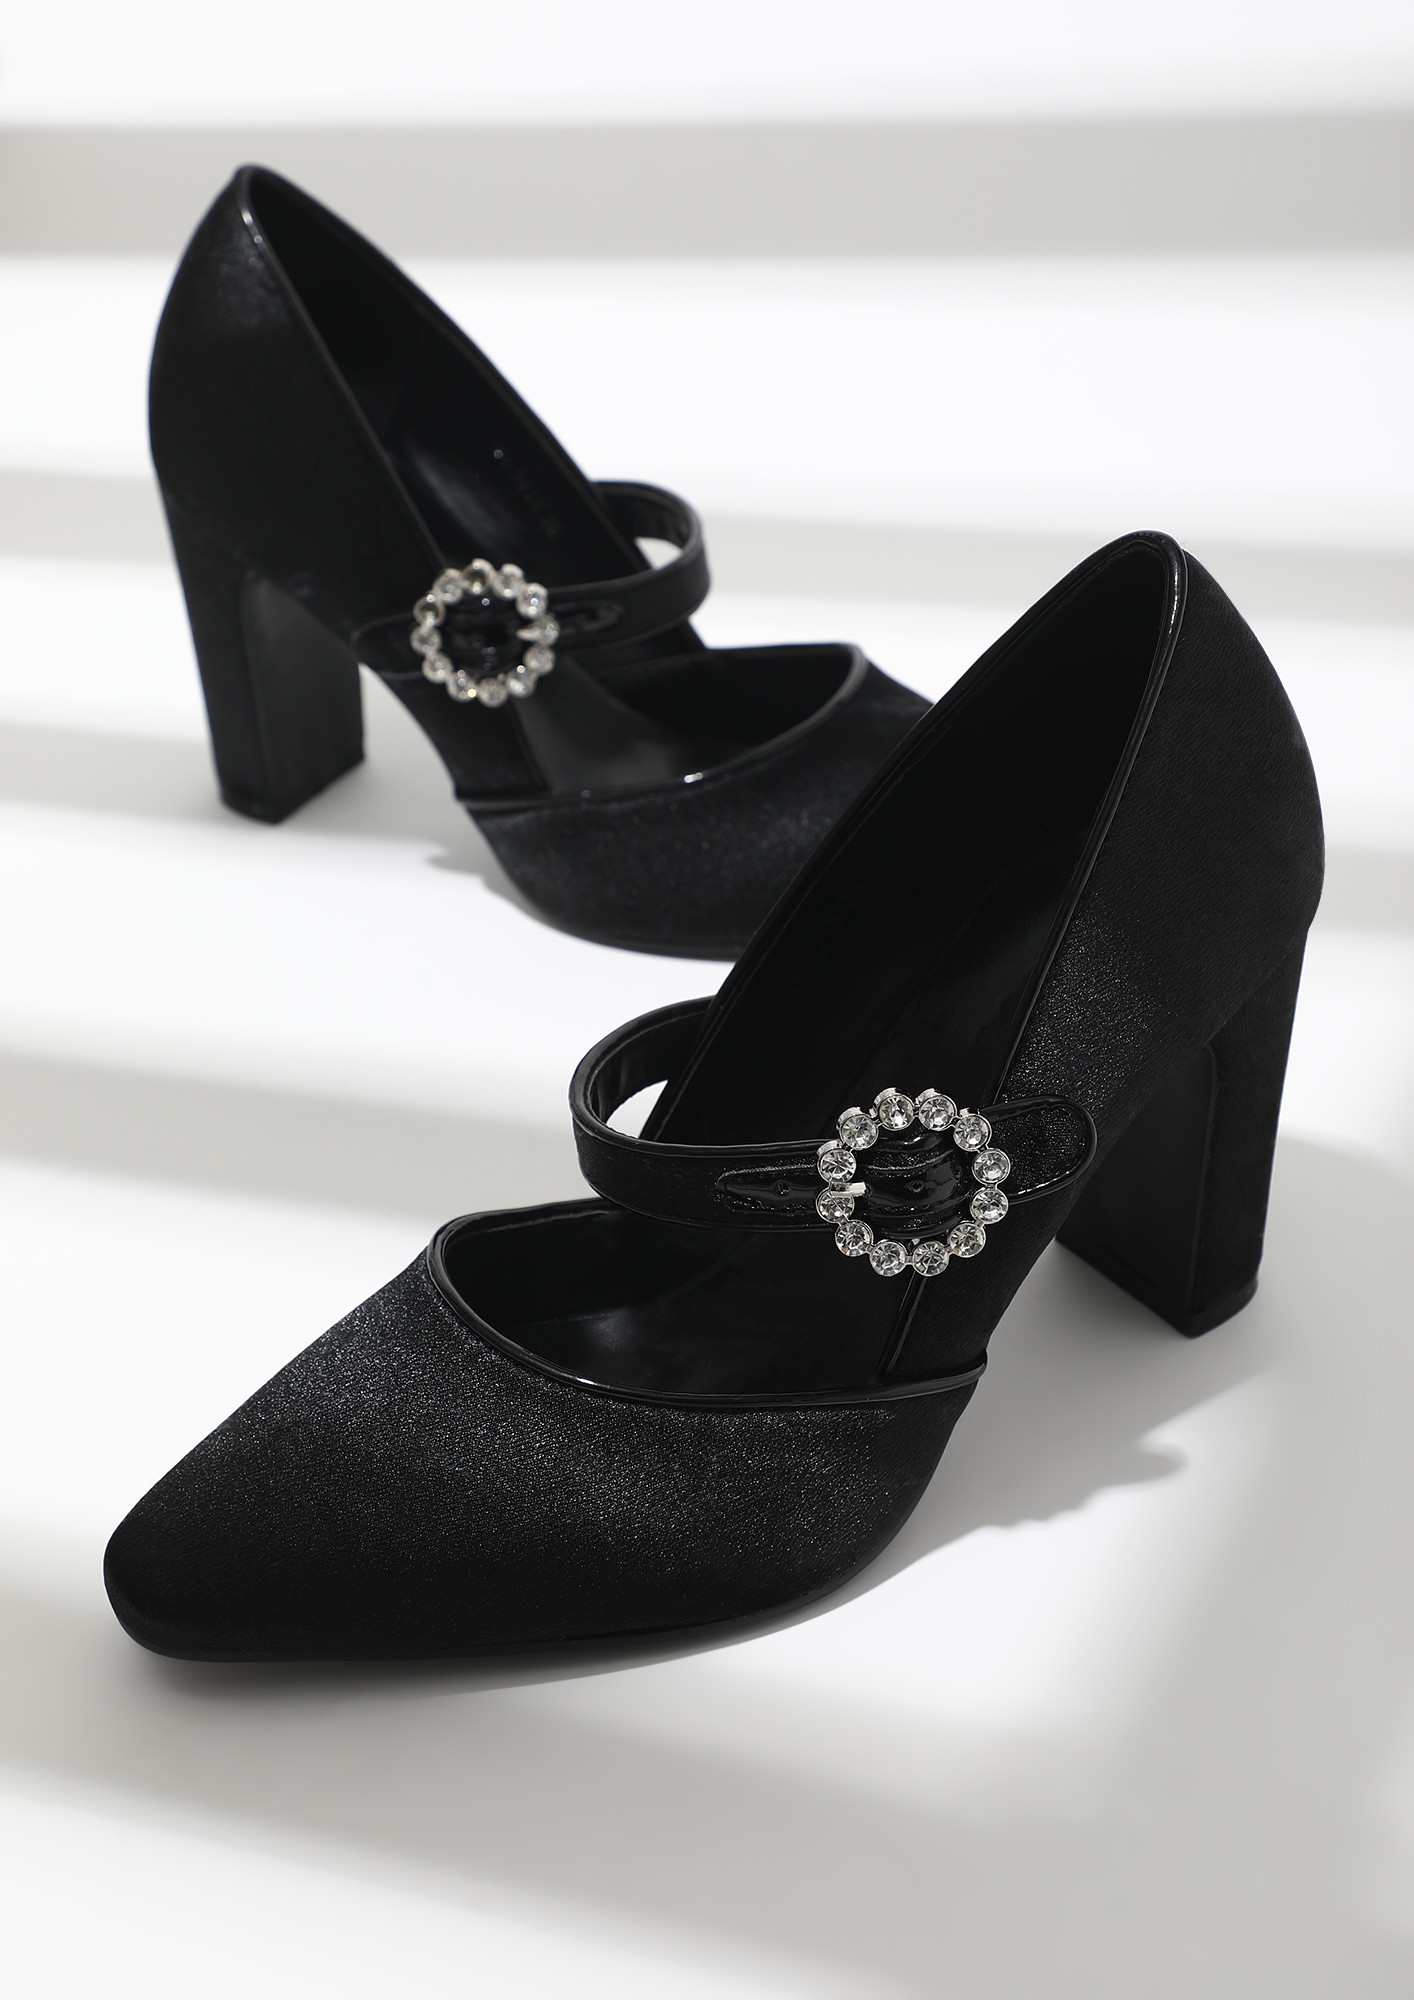 Buy Black Sandals with Block Heels for Women Online in India